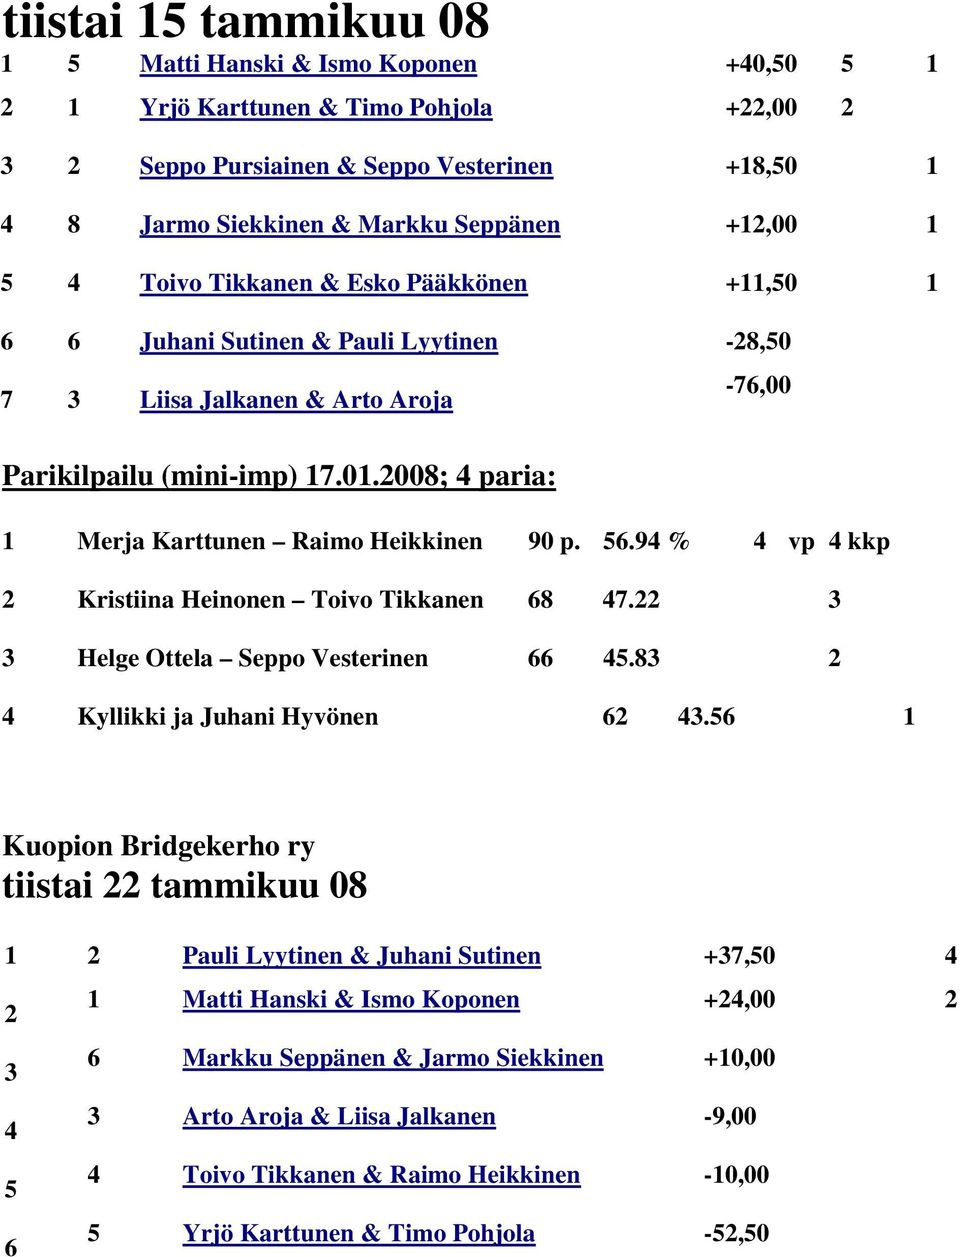 2008; 4 paria: -76,00 1 Merja Karttunen Raimo Heikkinen 90 p. 56.94 % 4 vp 4 kkp 2 Kristiina Heinonen Toivo Tikkanen 68 47.22 3 3 Helge Ottela Seppo Vesterinen 66 45.